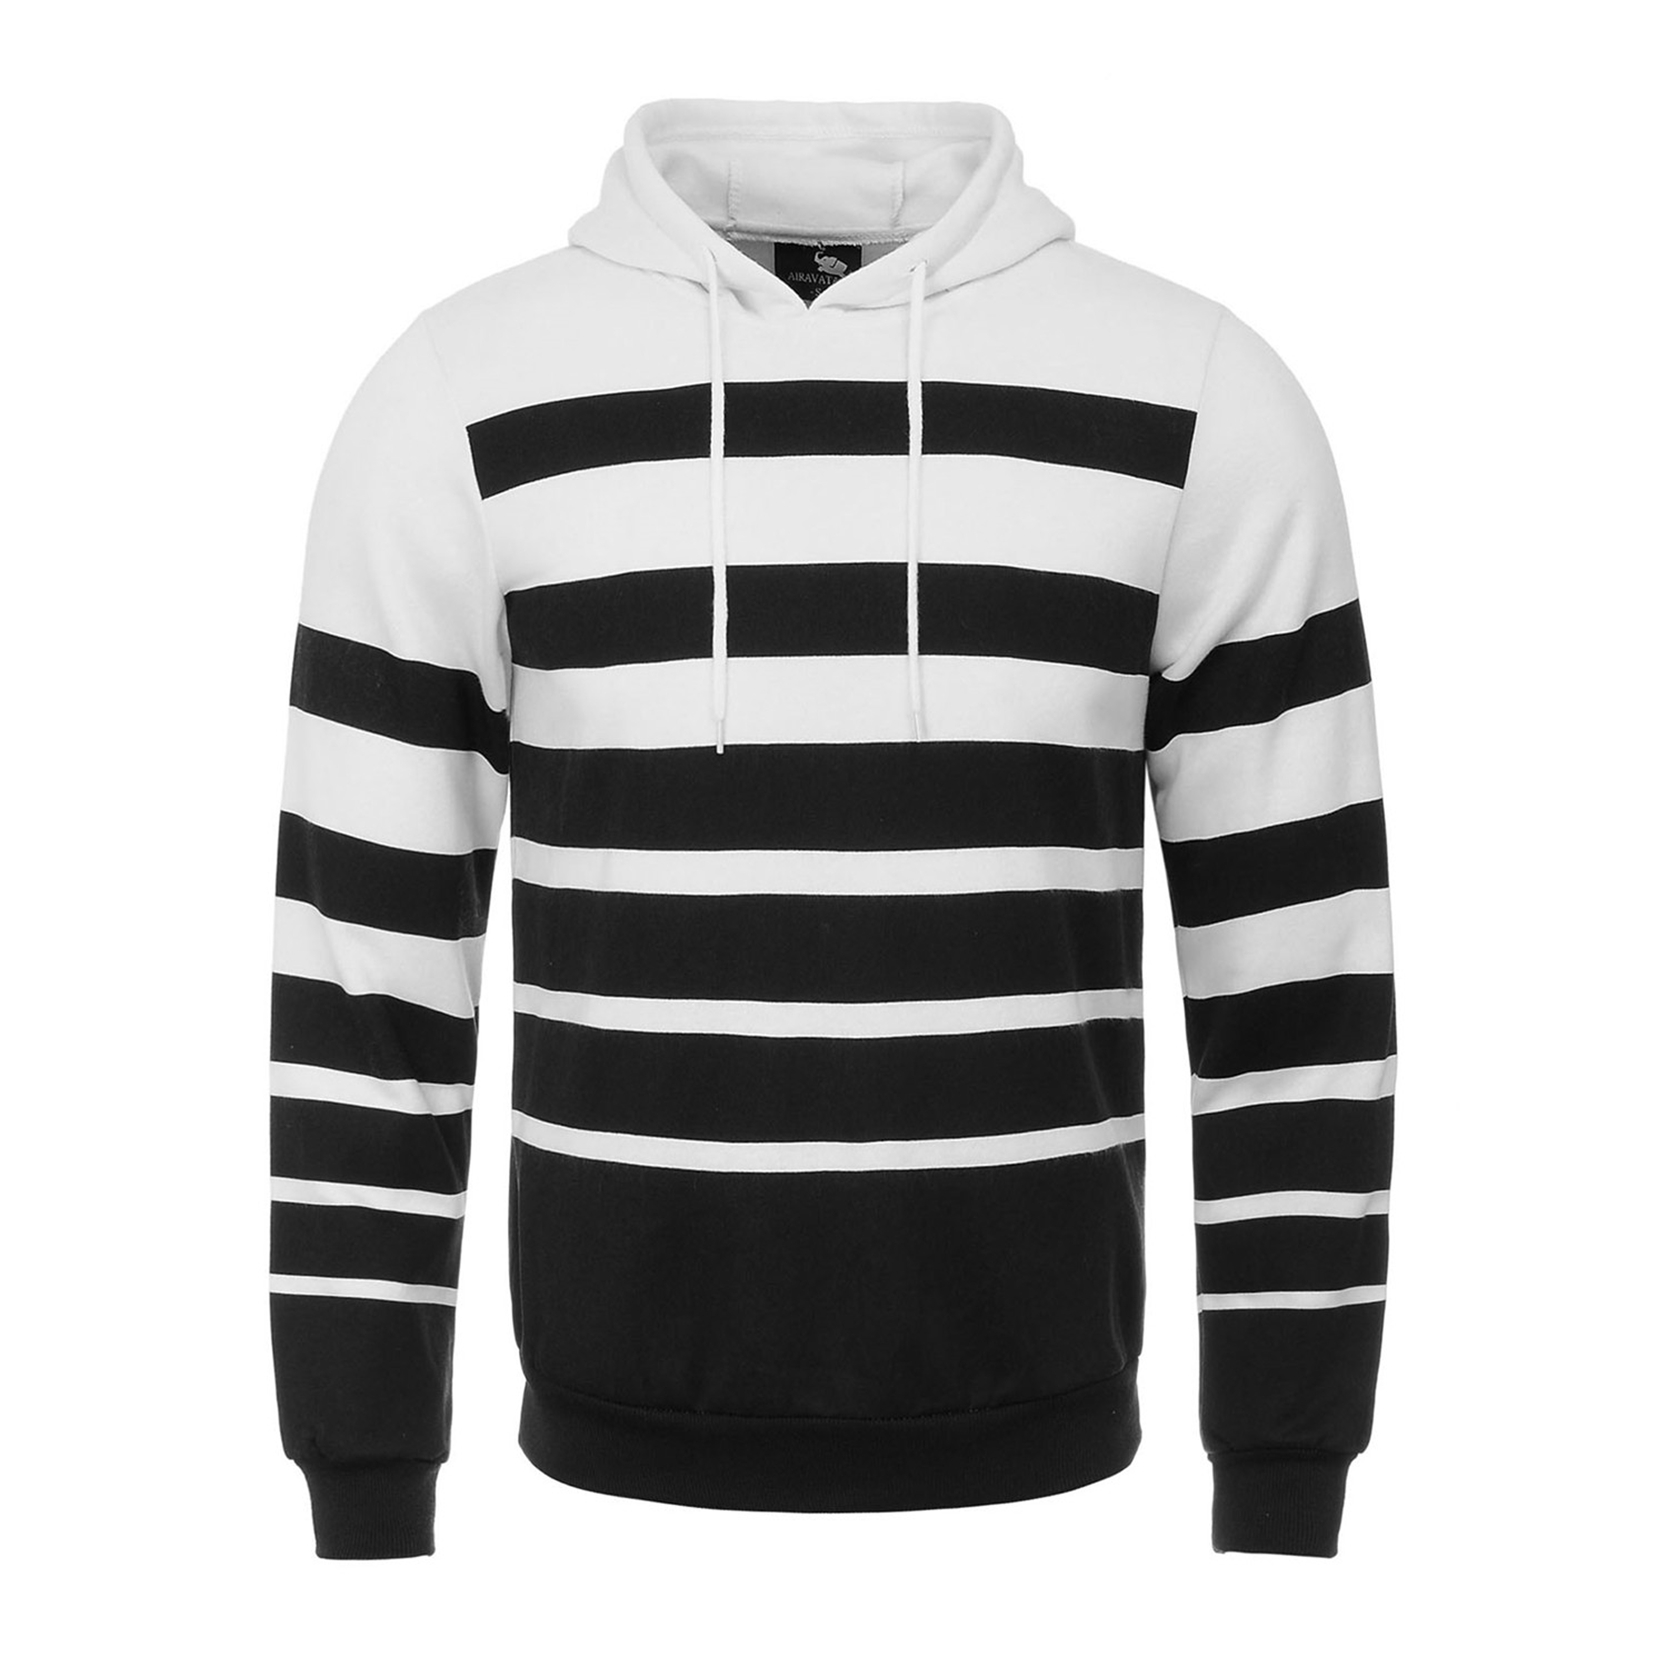 2016-Casual-Hoodies-Men-O-neck-Hombre-Hip-Hop-Track-Suit-Black-White-Stripe-Male-Sweatshirt-Cotton-S-32775152810